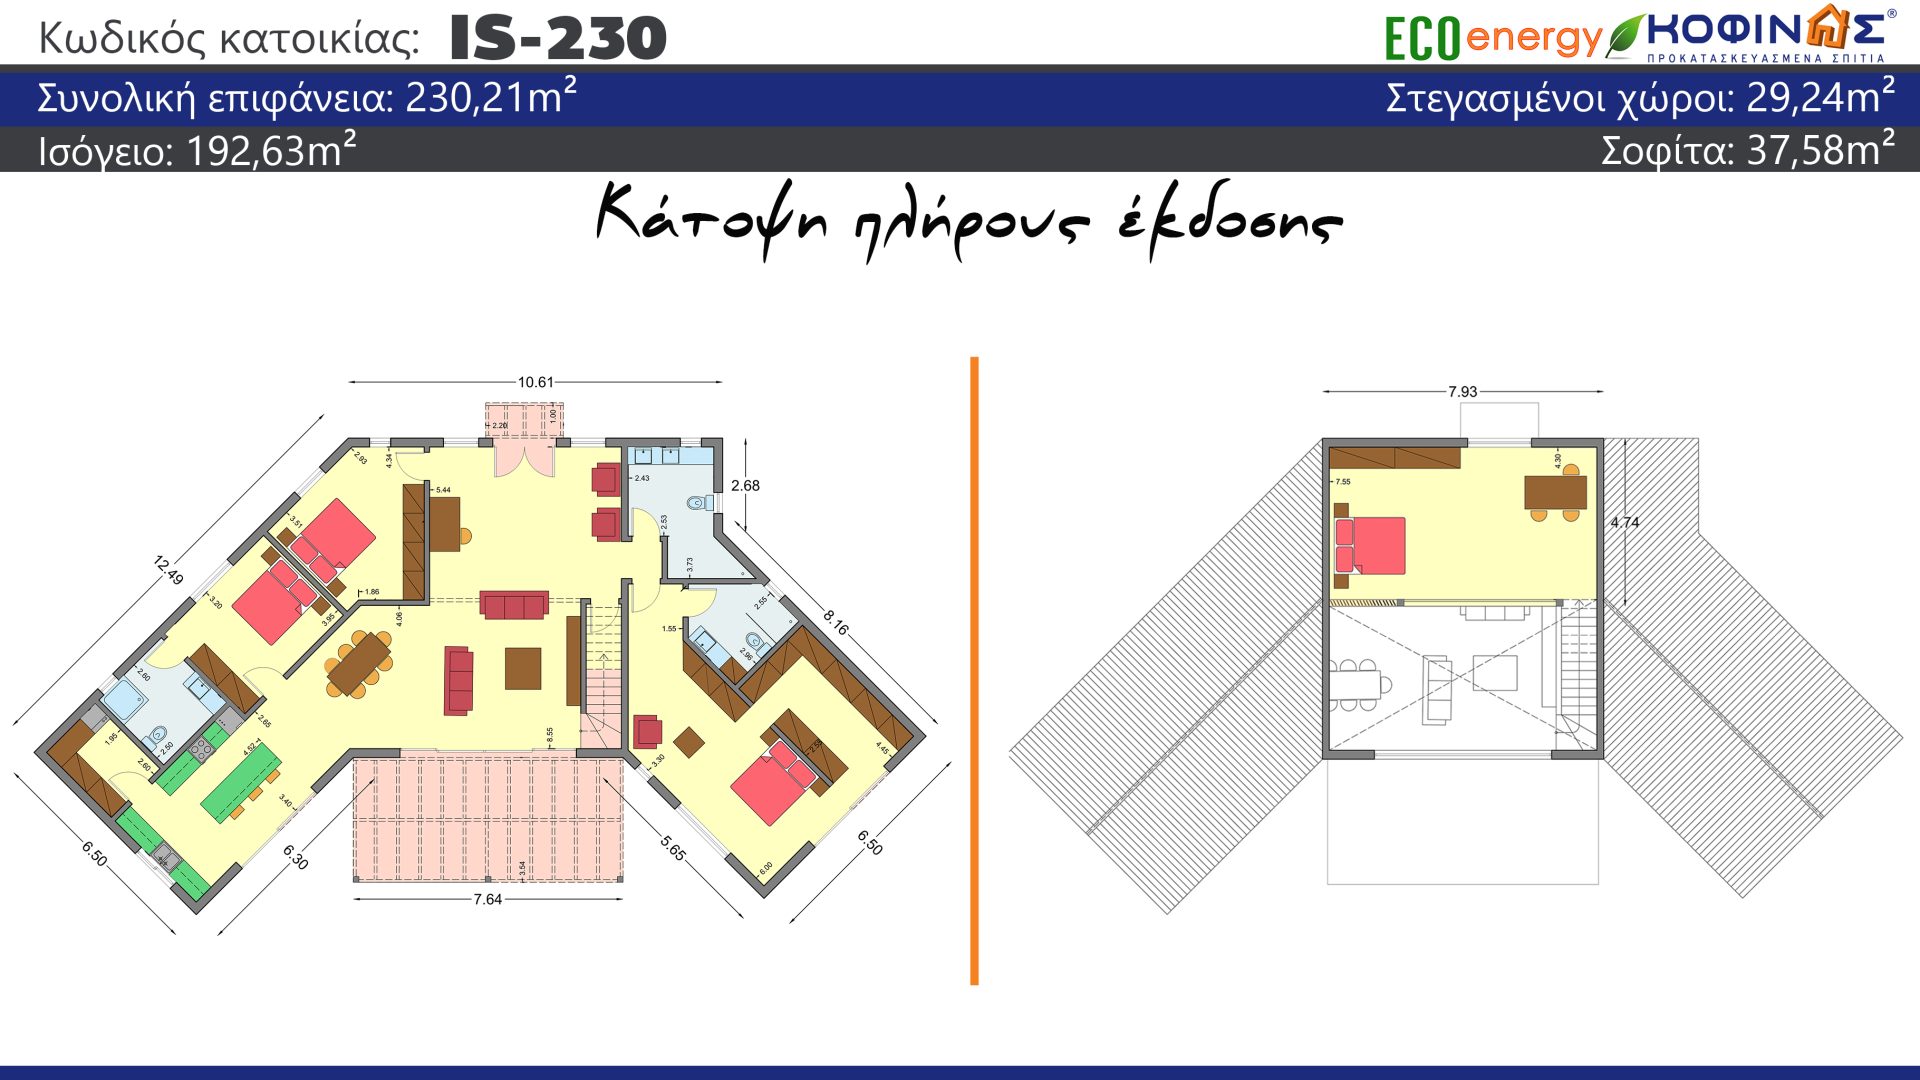 Ισόγεια Κατοικία με Σοφίτα IS-230, συνολικής επιφάνειας 230,21 τ.μ., συνολική επιφάνεια στεγασμένων χώρων 29,24 τ.μ.